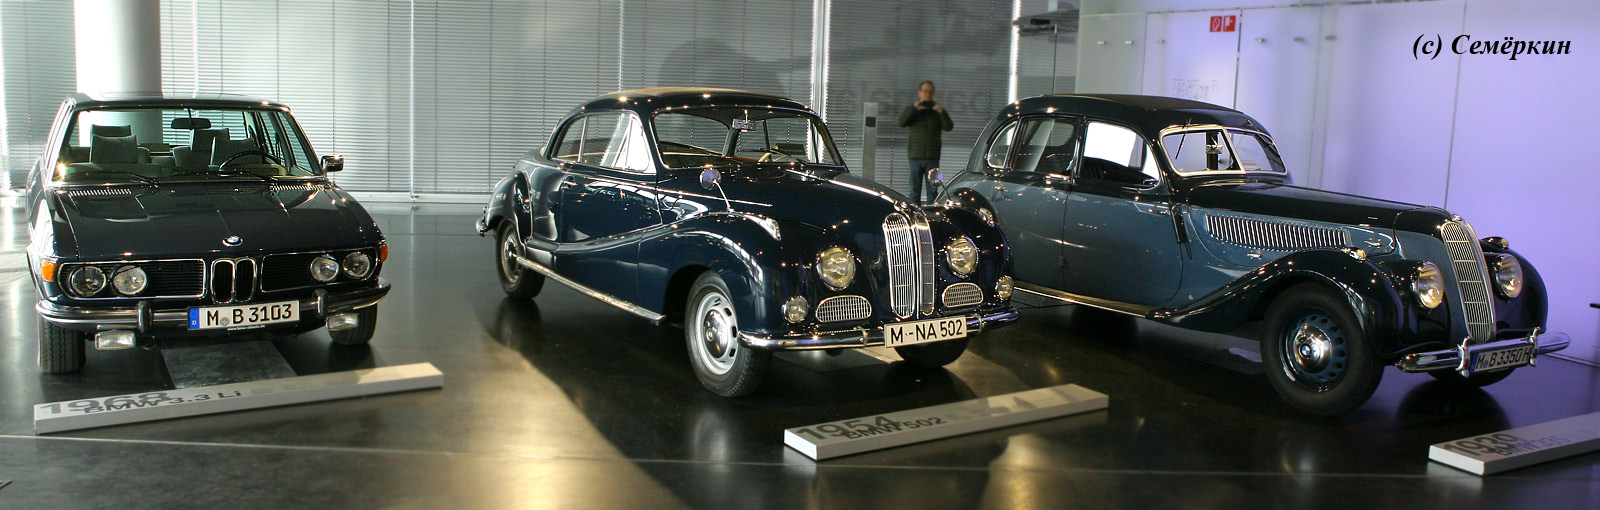 Музей BMW - История эволюции BMW – с конца 30-х по конец 60-х